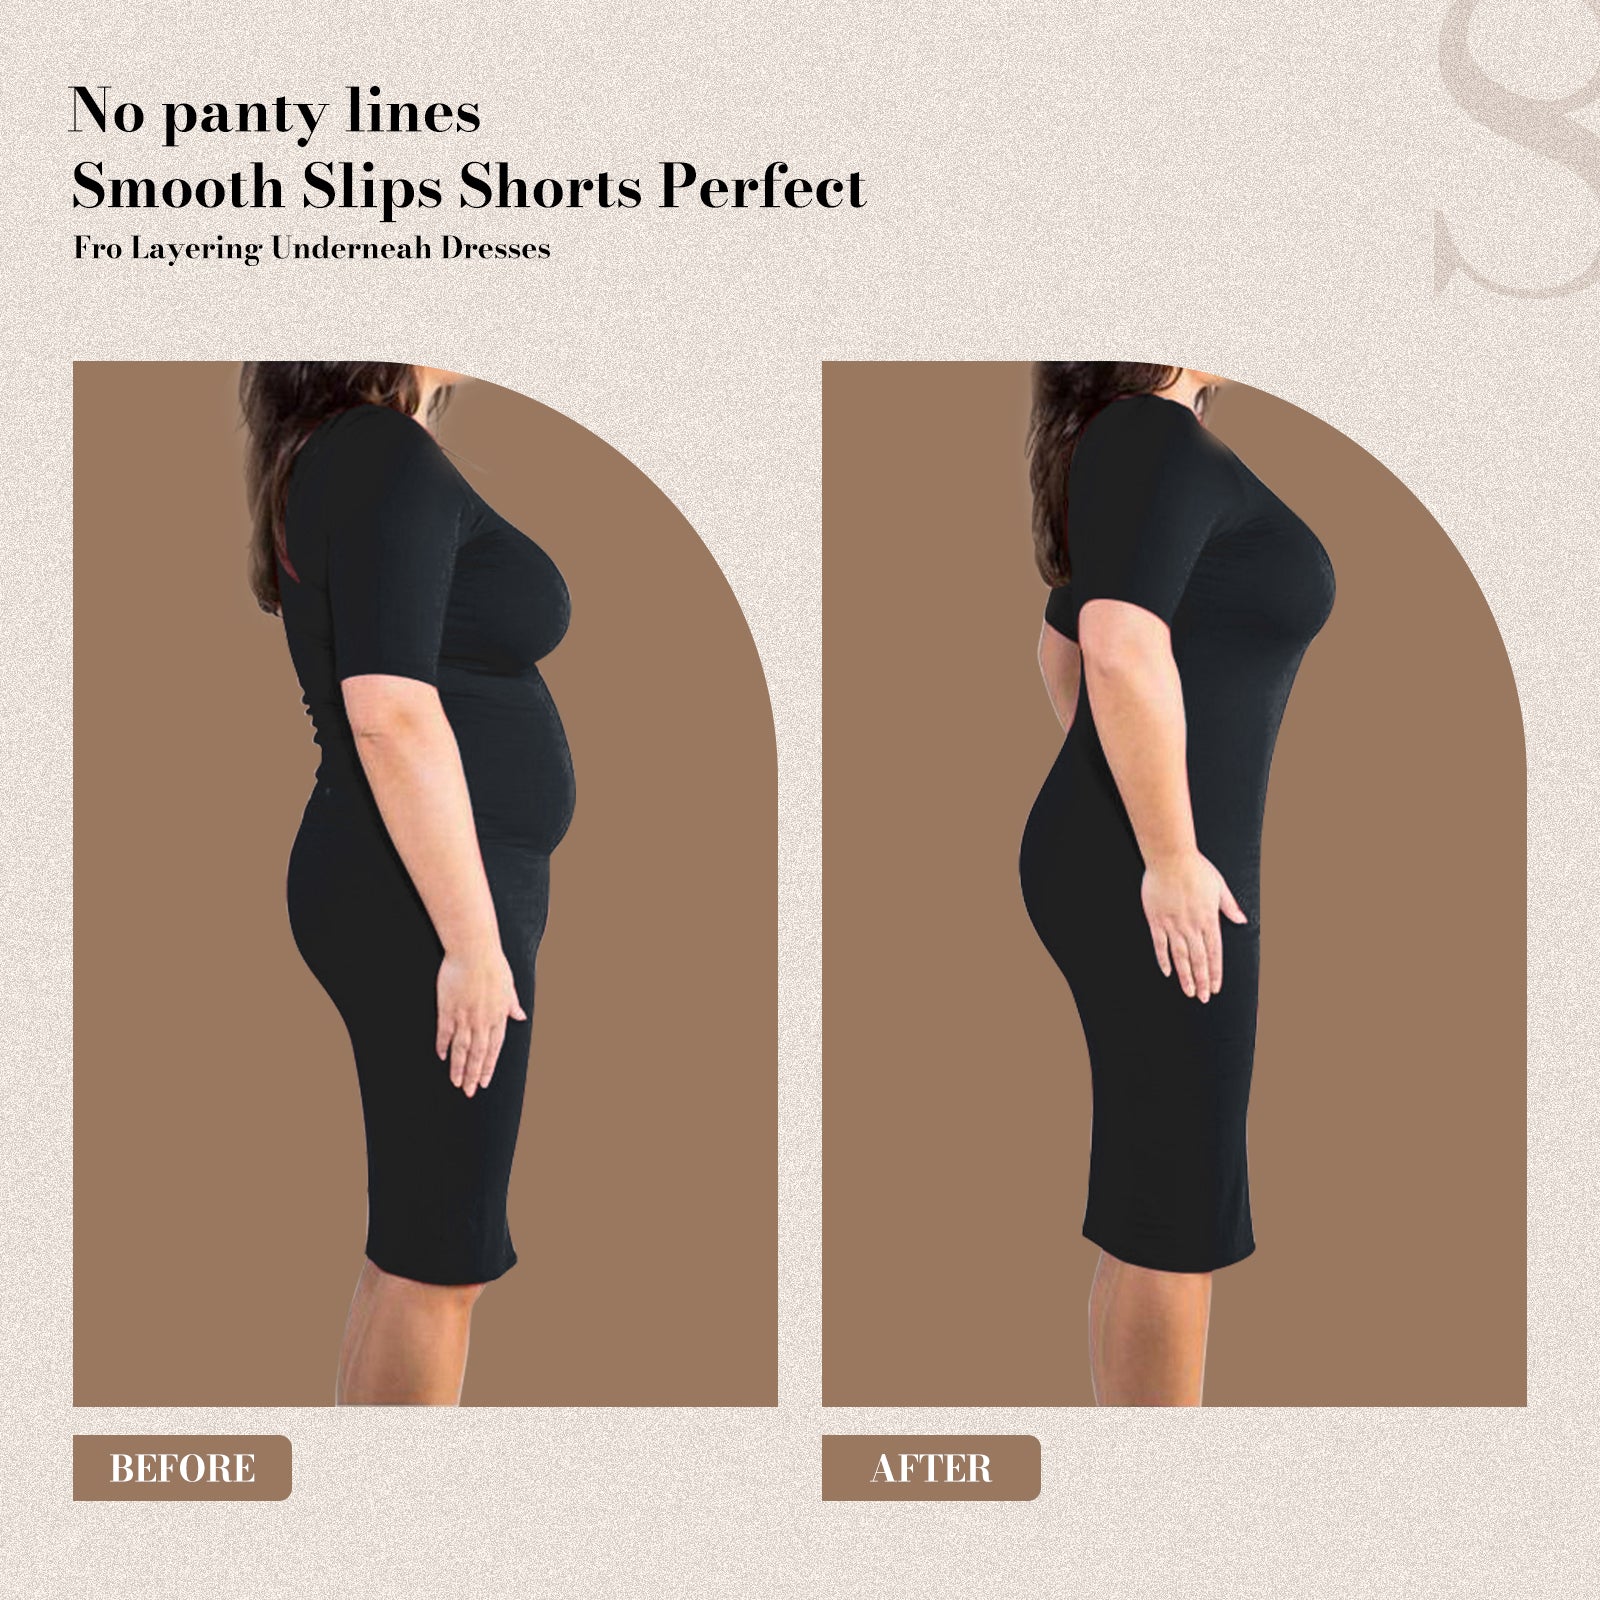 Shaperin Tummy Control Shapewear High Waist Faja Shorts